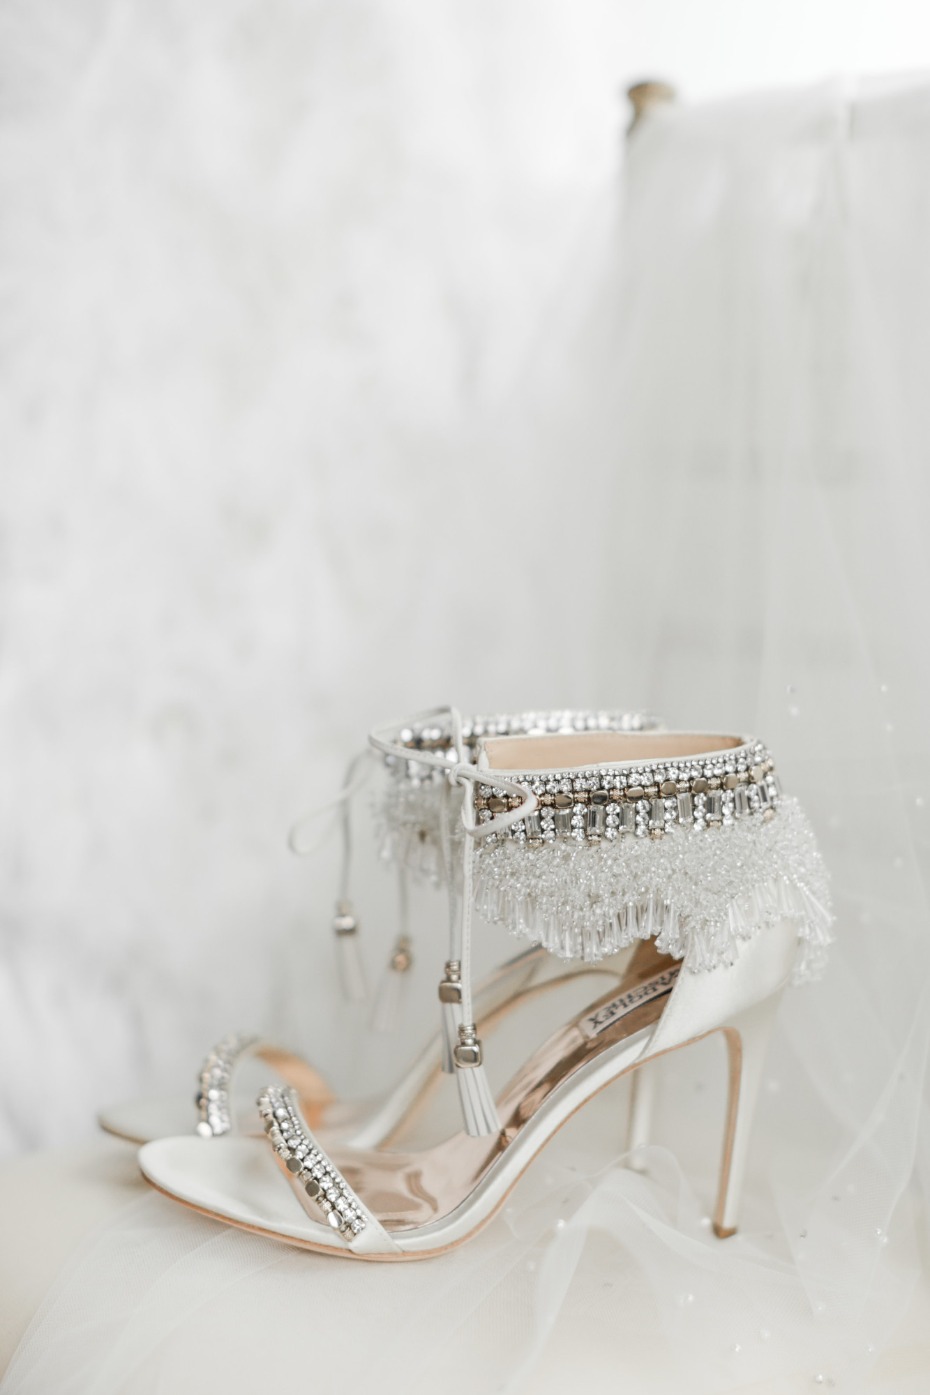 Bride heels from Badgley Mischka